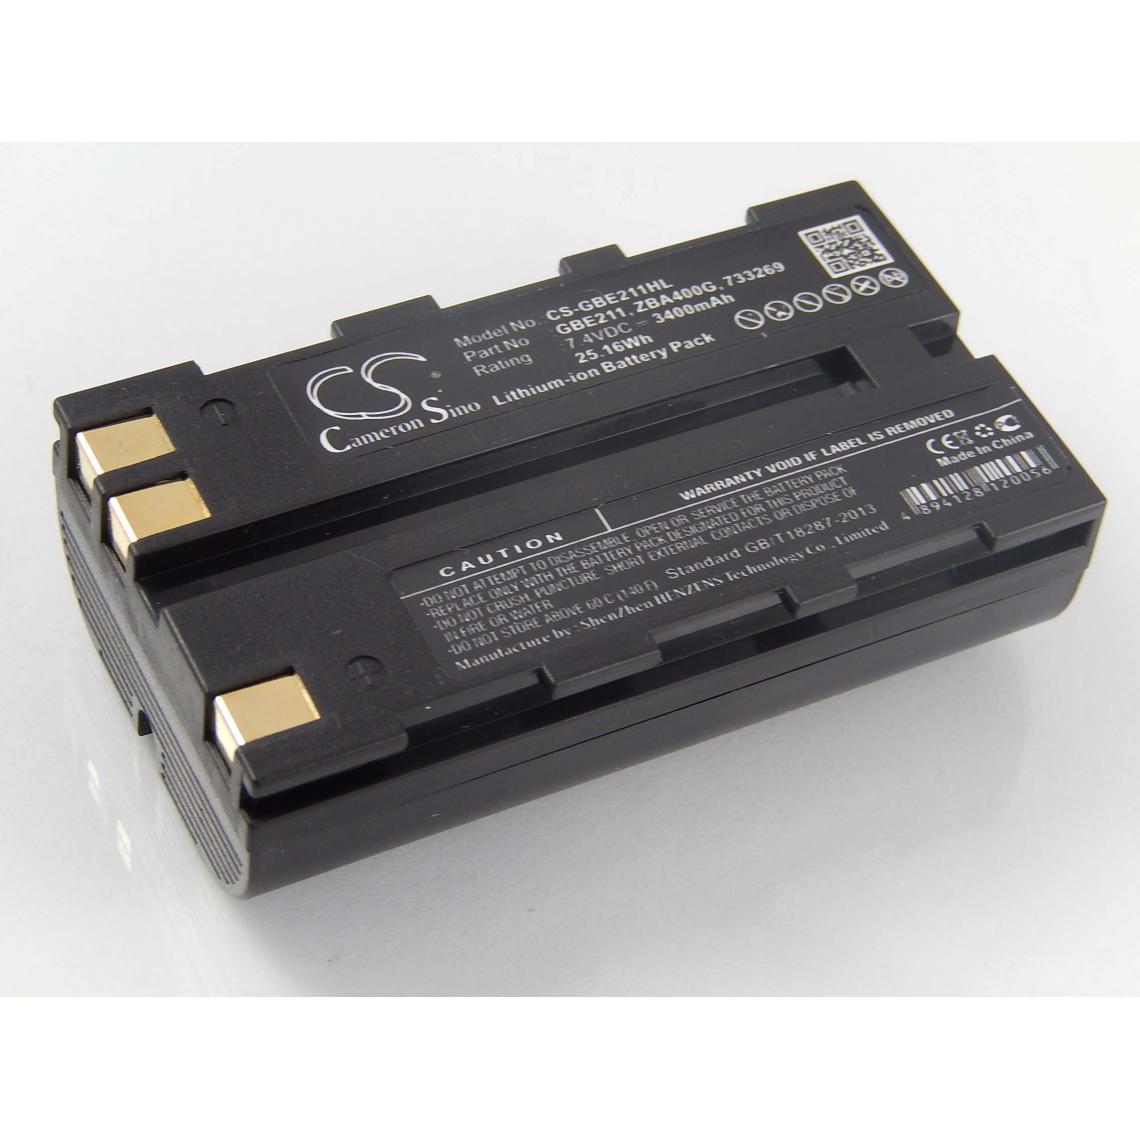 Vhbw - vhbw Batterie remplacement pour Geomax ZBA200, ZBA400 pour dispositif de mesure laser, outil de mesure (3400mAh, 7,4V, Li-ion) - Piles rechargeables